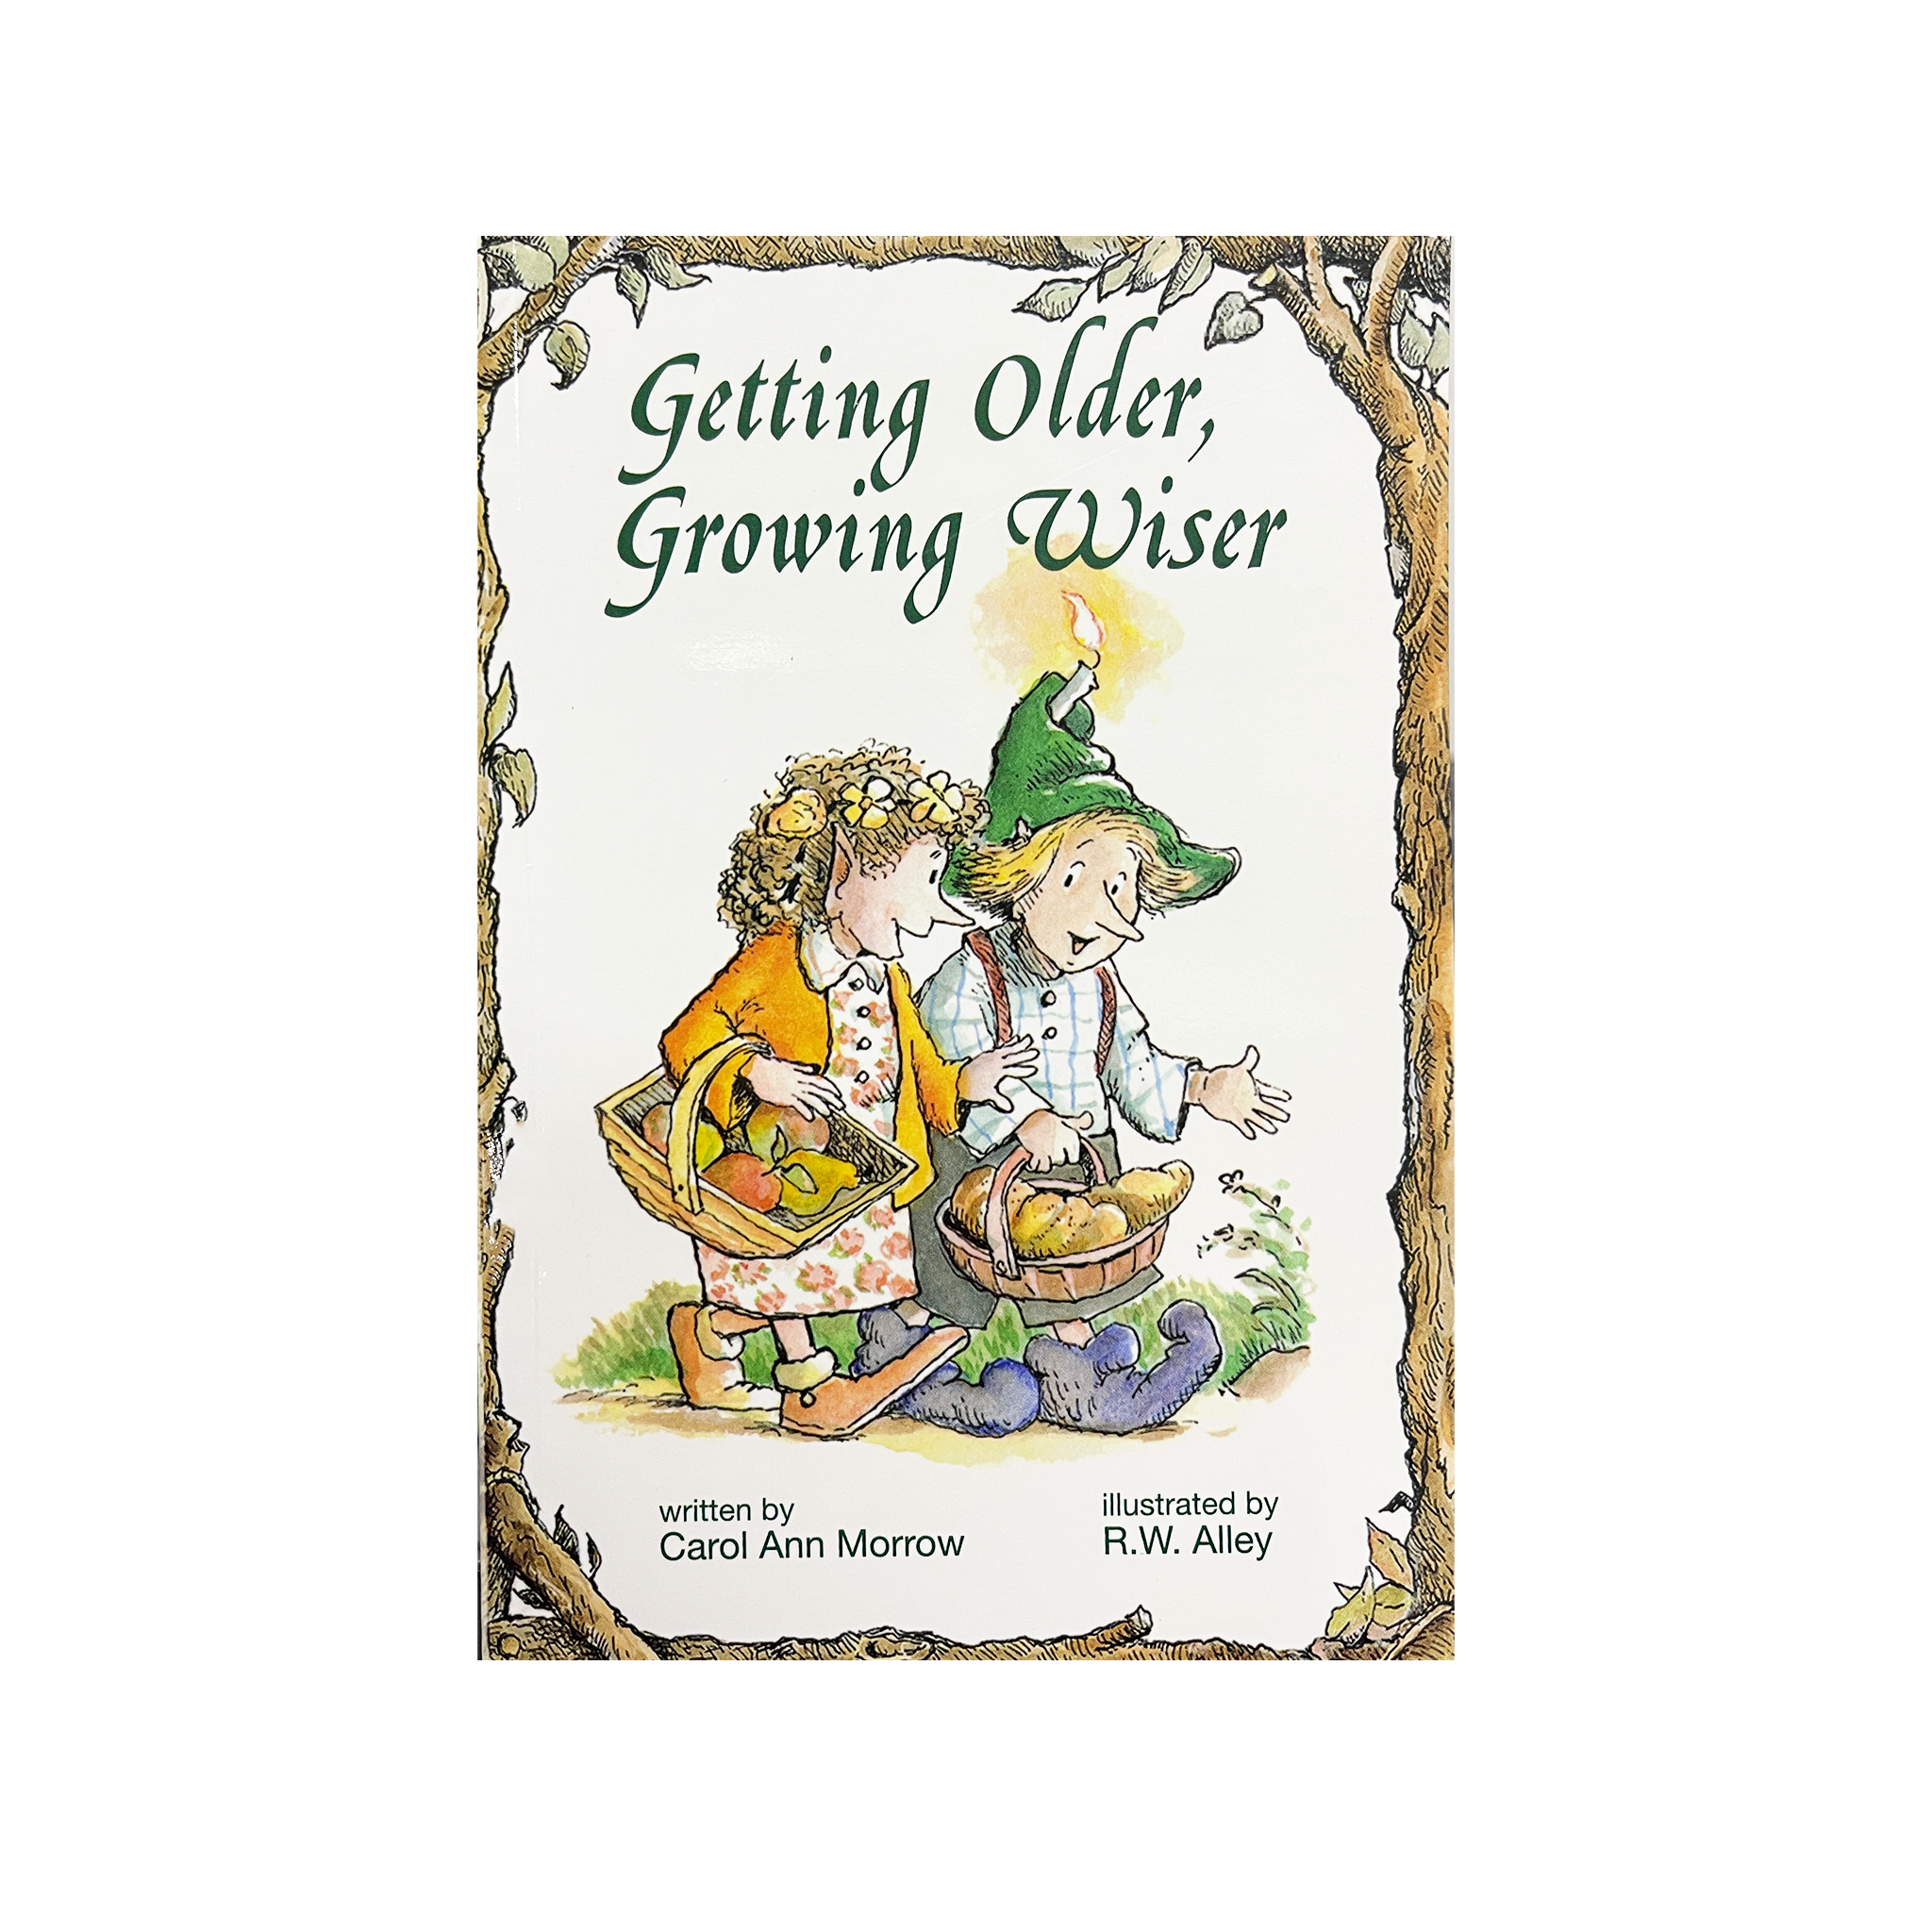 GETTING OLDER, GROWING WISER